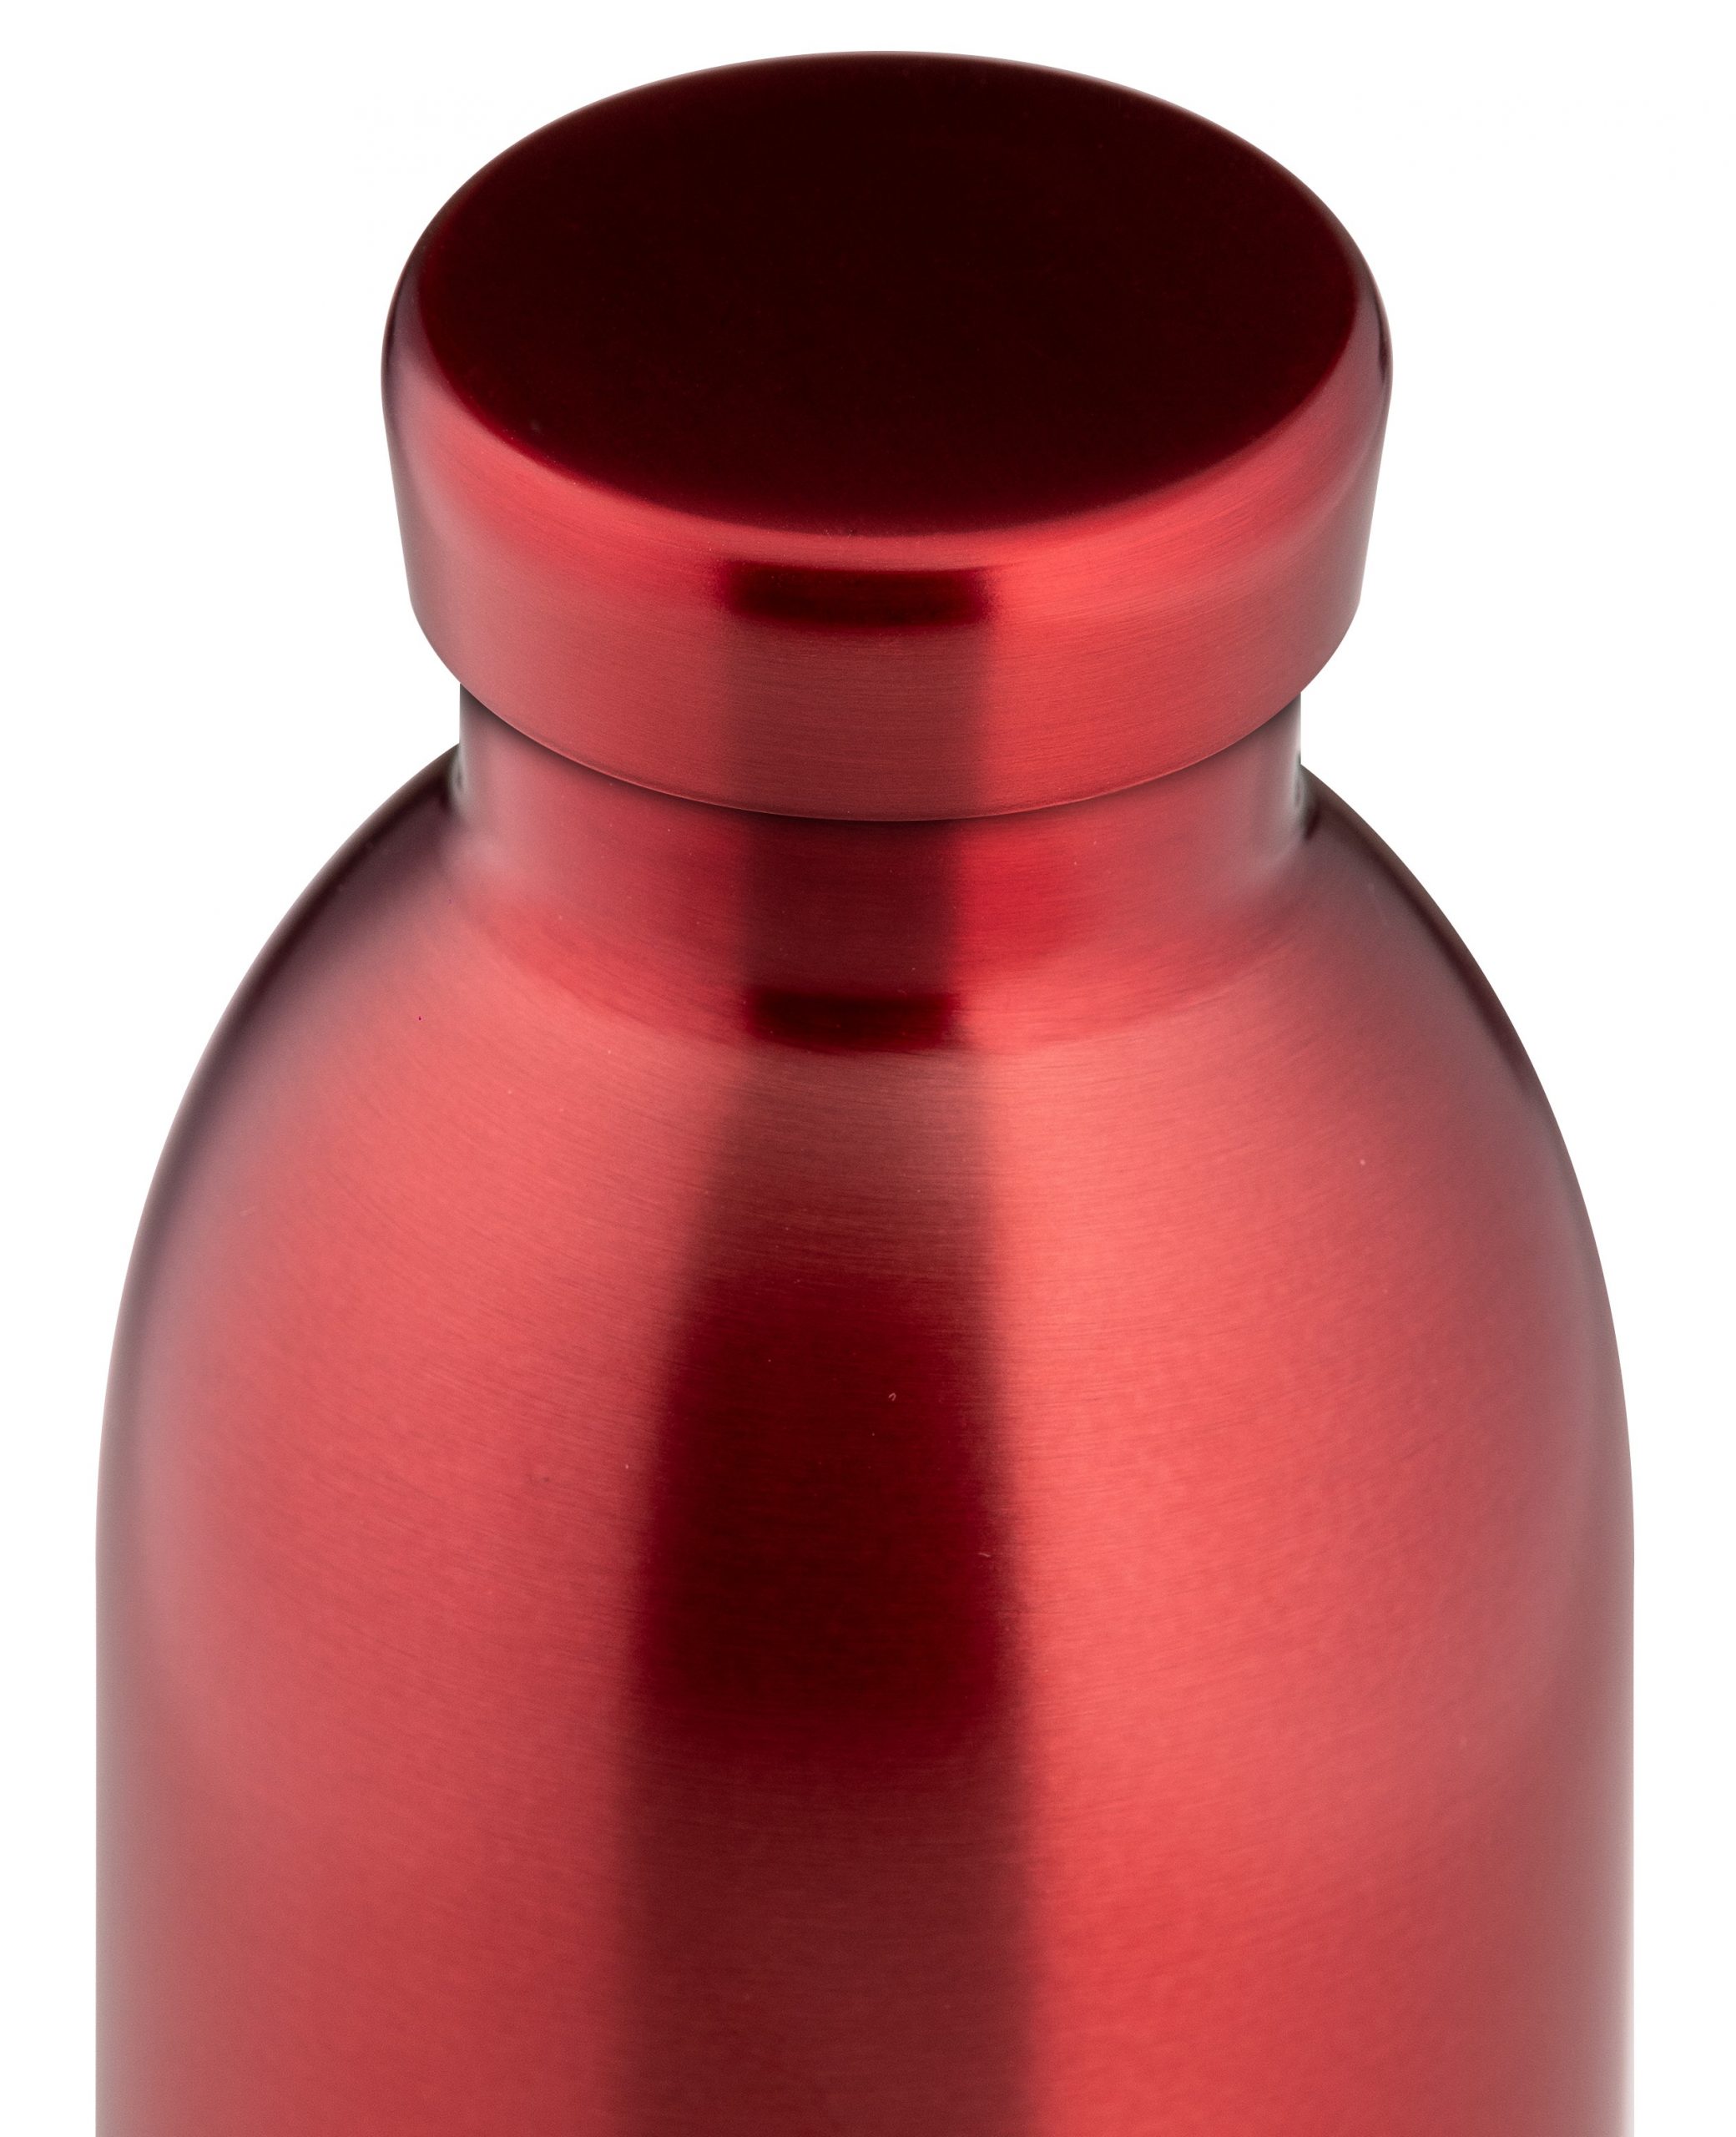 24bottles® Clima Bottle 500ml – Chianti Red